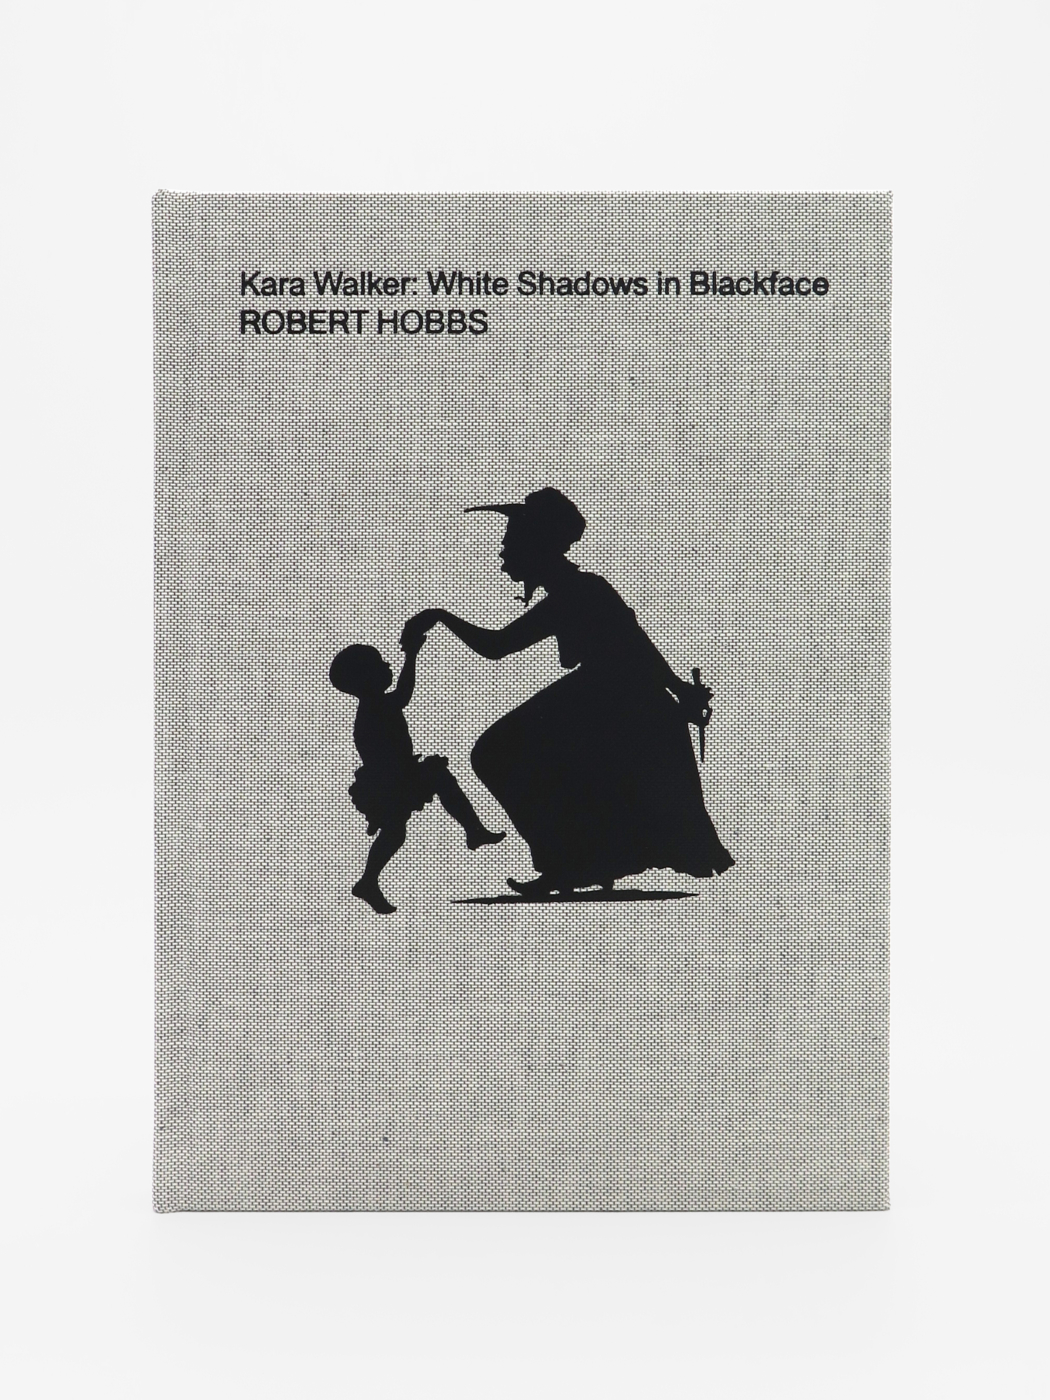 Robert Hobbs, Kara Walker: White Shadows in Blackface